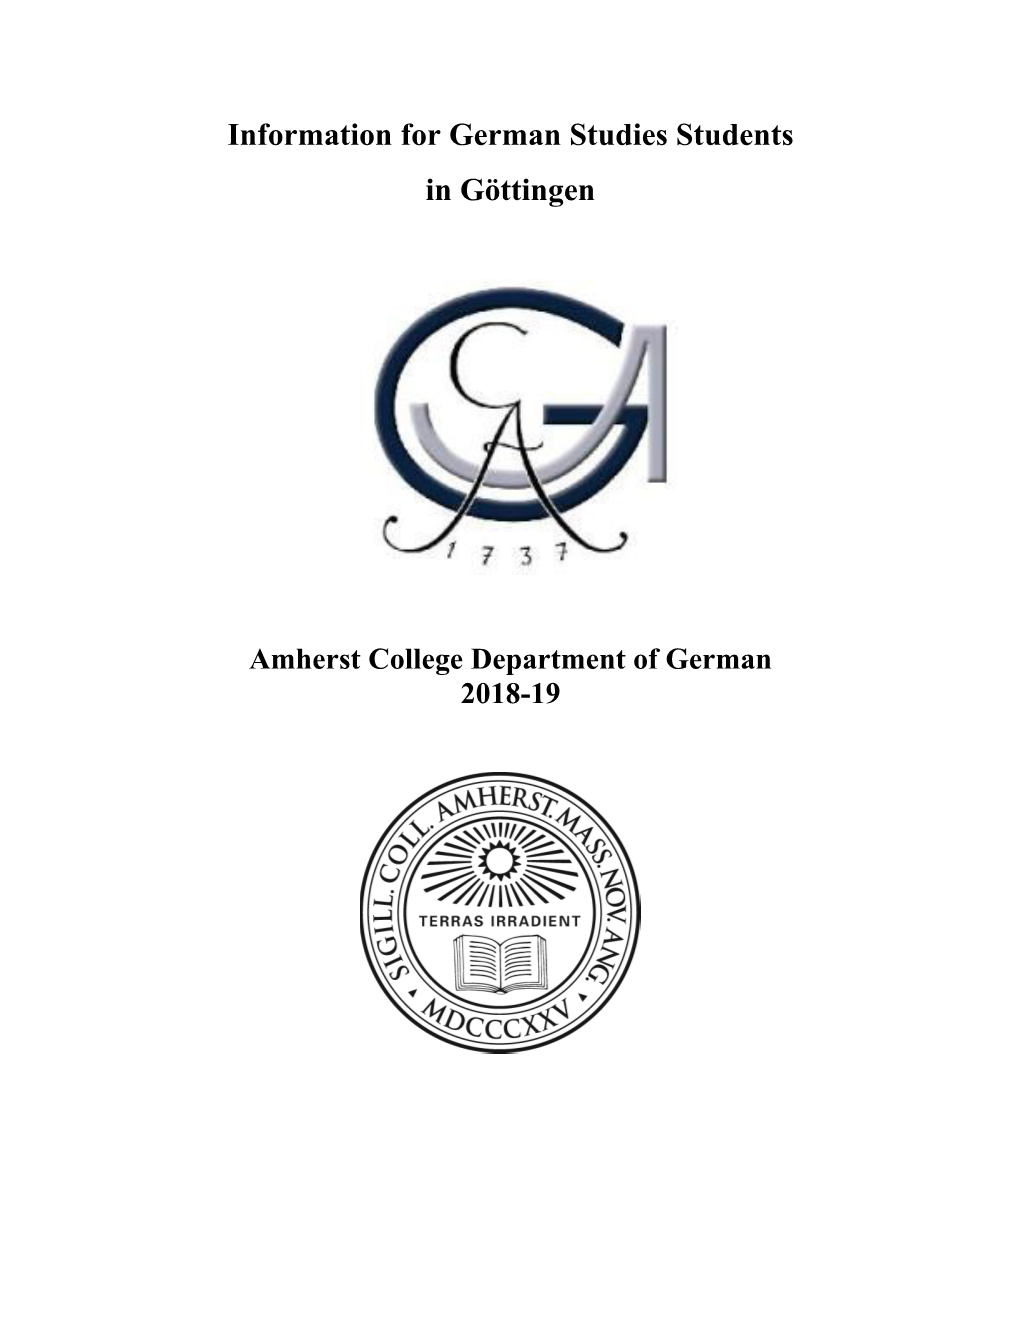 Information for German Studies Students in Göttingen